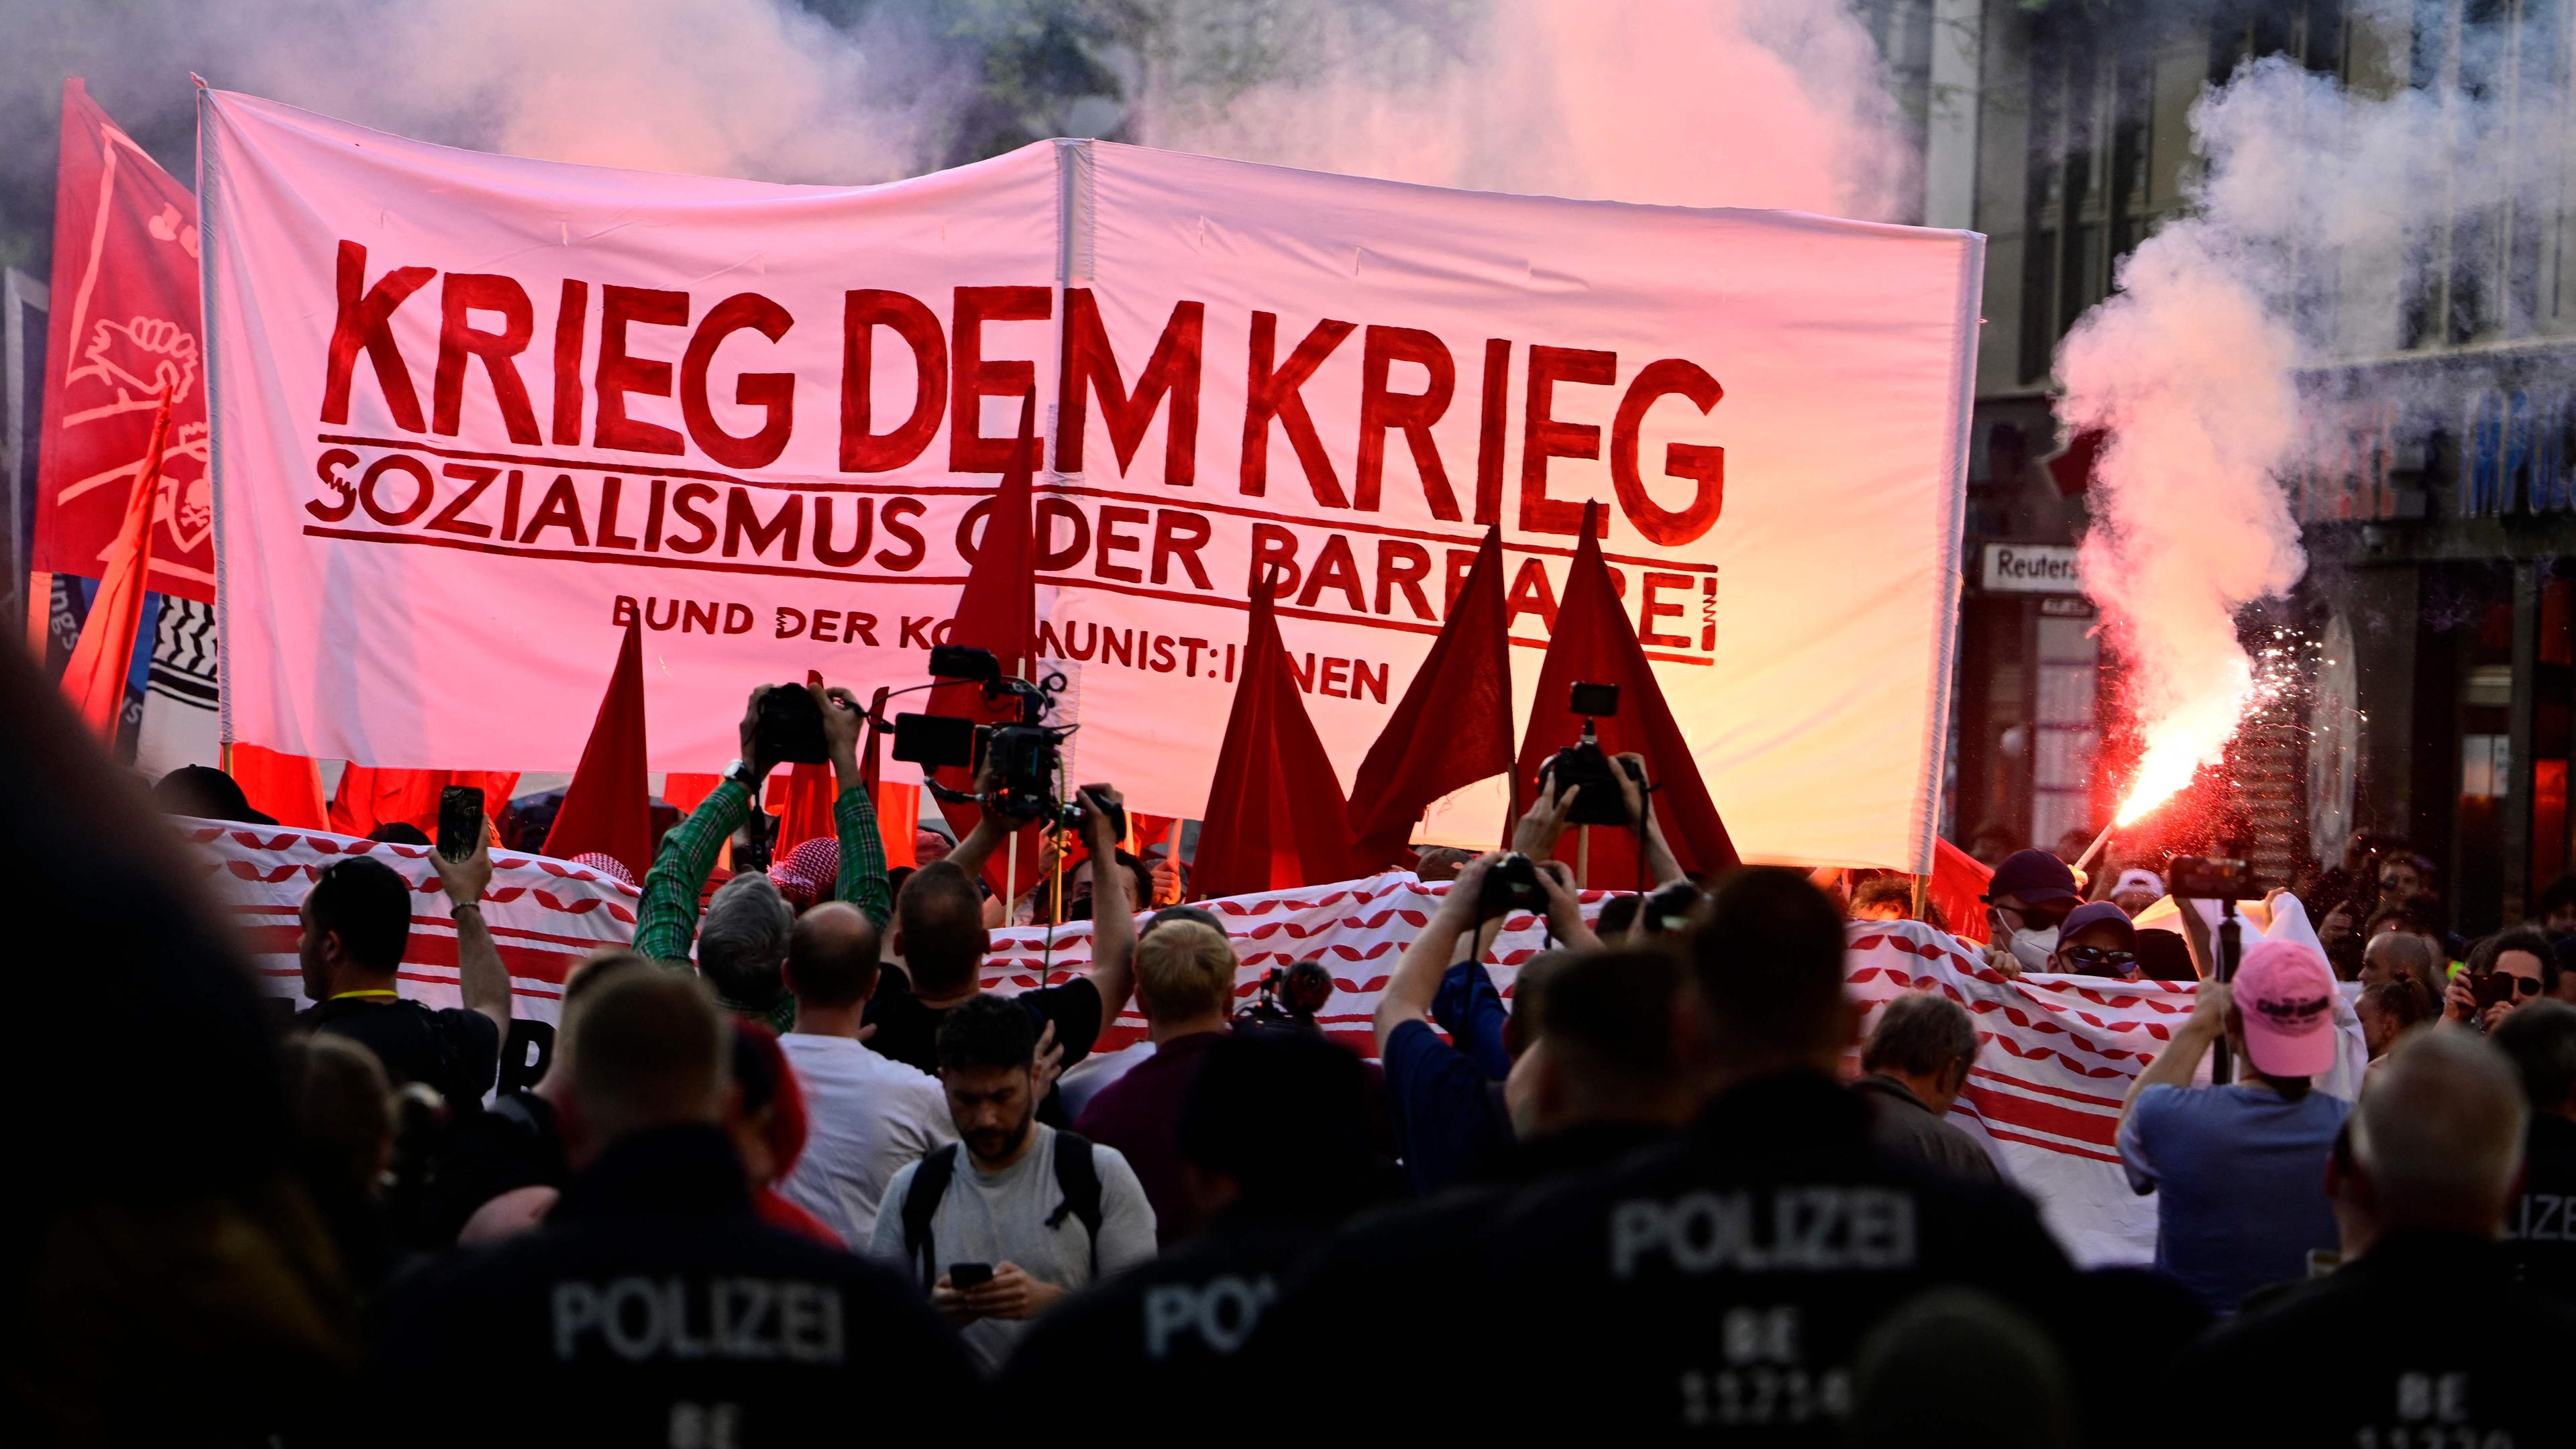 Teilnehmer der "Revolutionären 1. Mai-Demonstration" in Berlin zünden Pyrotechnik und zeigen ein ein Transparent mit der Aufschrift "Krieg dem Krieg – Sozialismus oder Barbarei"